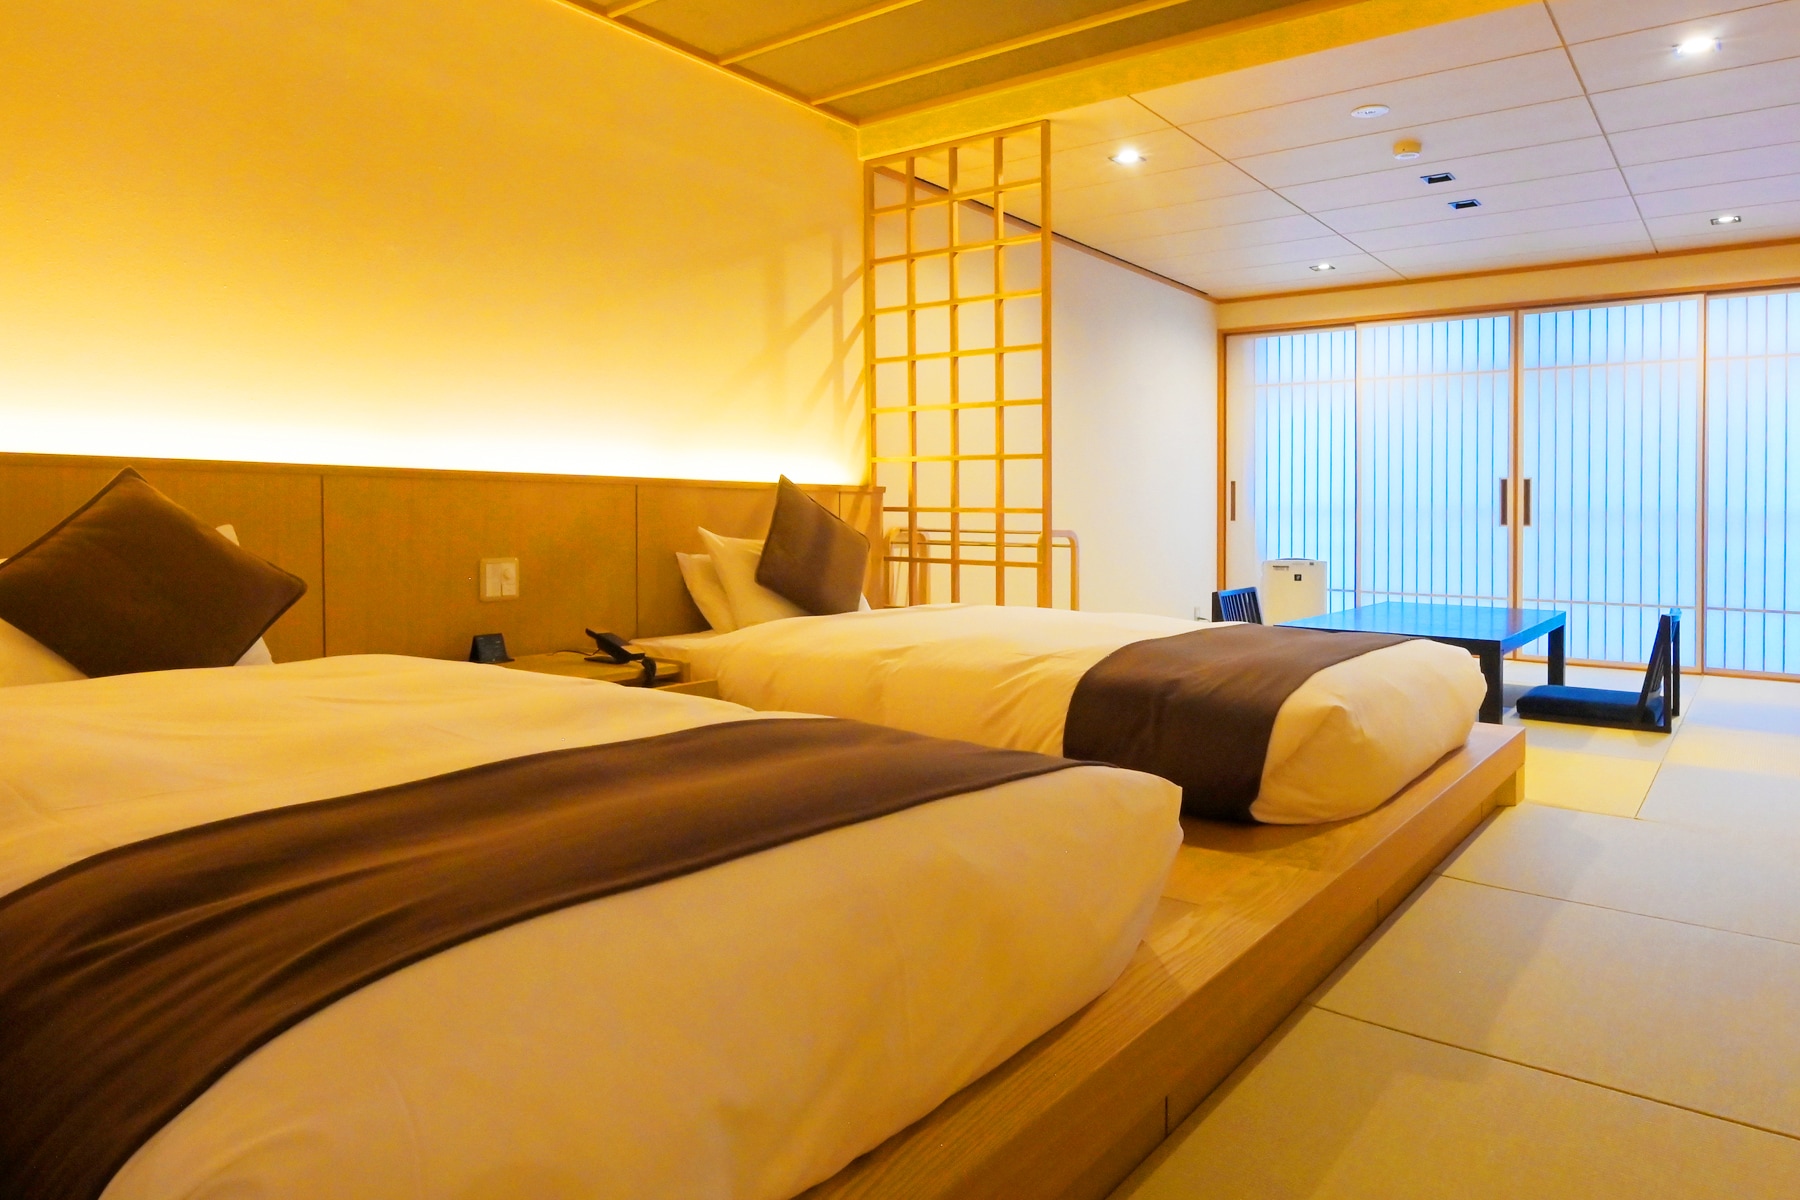 （城鎮邊別墅/10 榻榻米日式客房）最多可容納 4 人，配有 2 張普通床 + 額外的蒲團。柔和的燈光營造出舒緩的空間